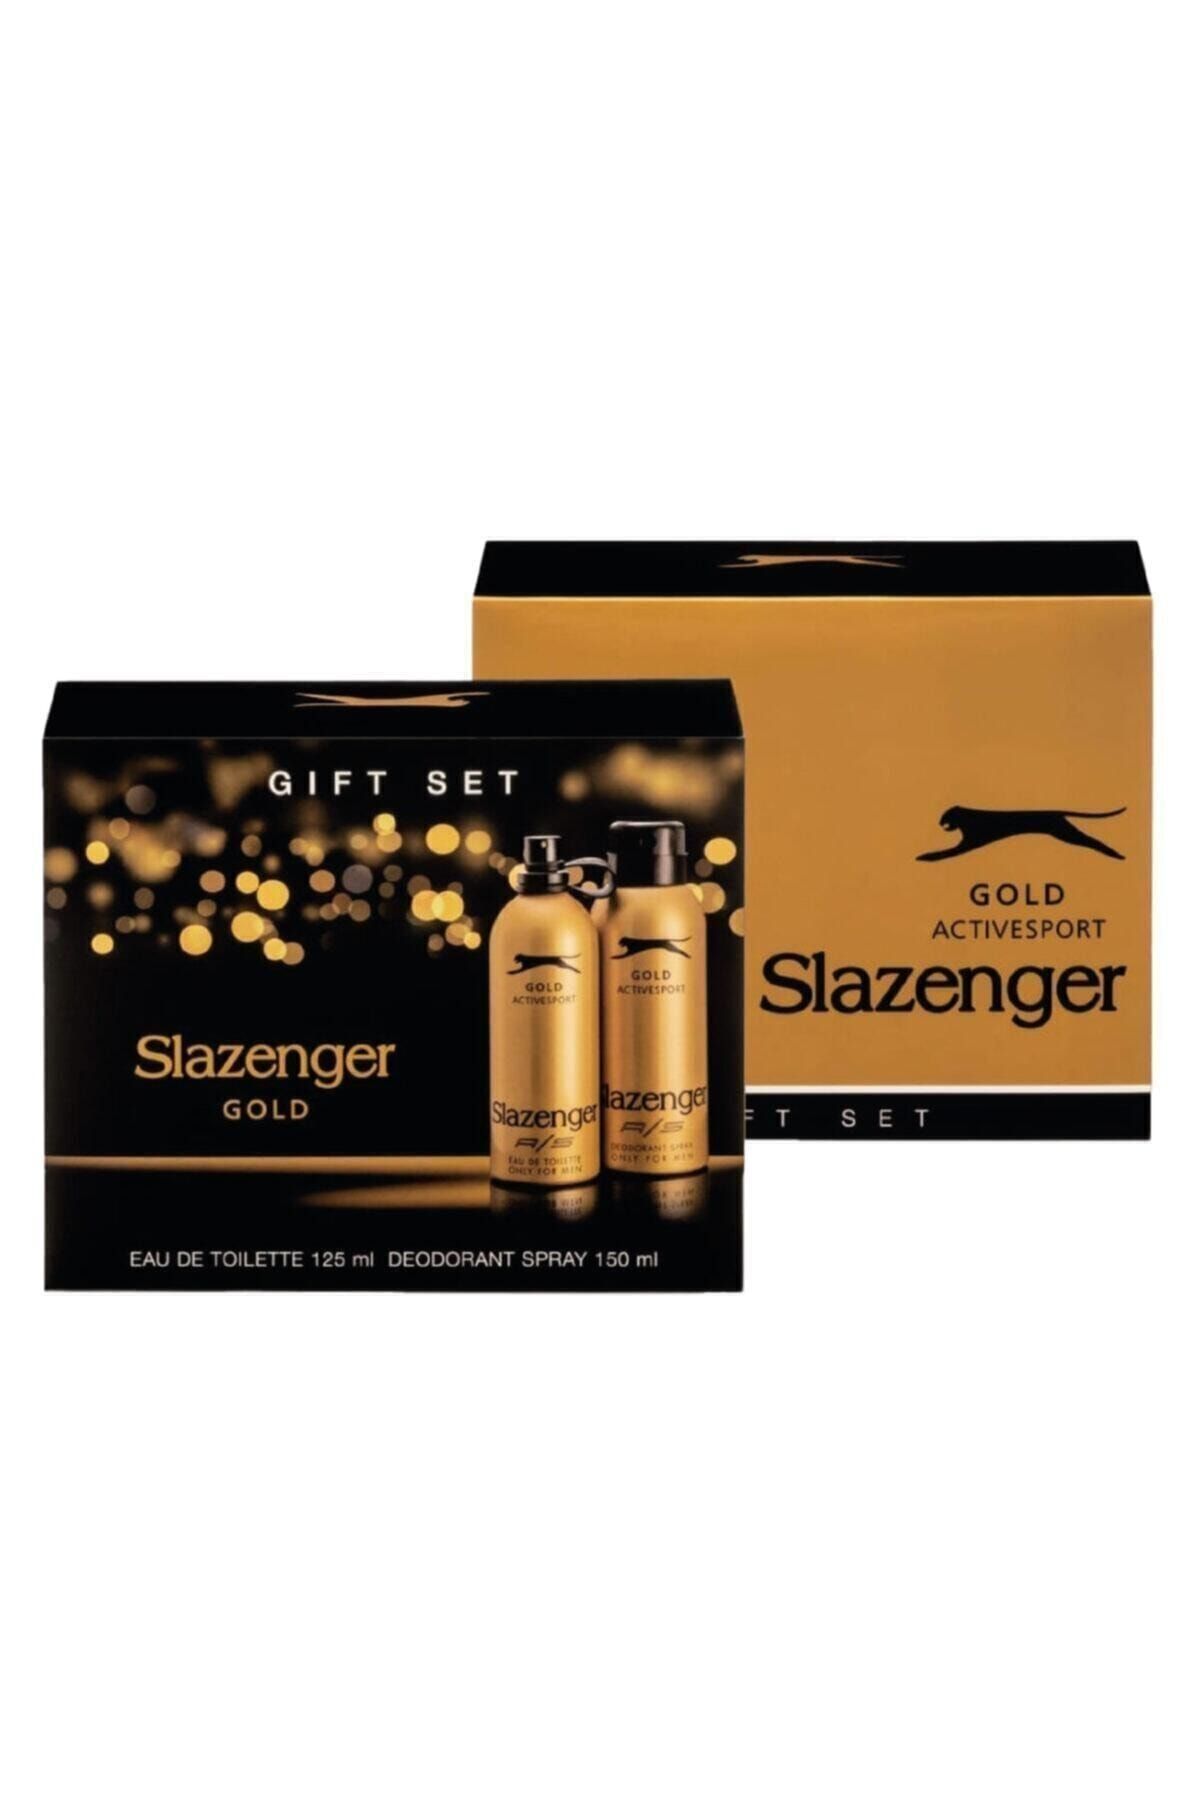 ست دئودورانت و عطر مردانه طلایی اکتیو اسپورت اسلازنجر Slazenger (برند انگلستان)